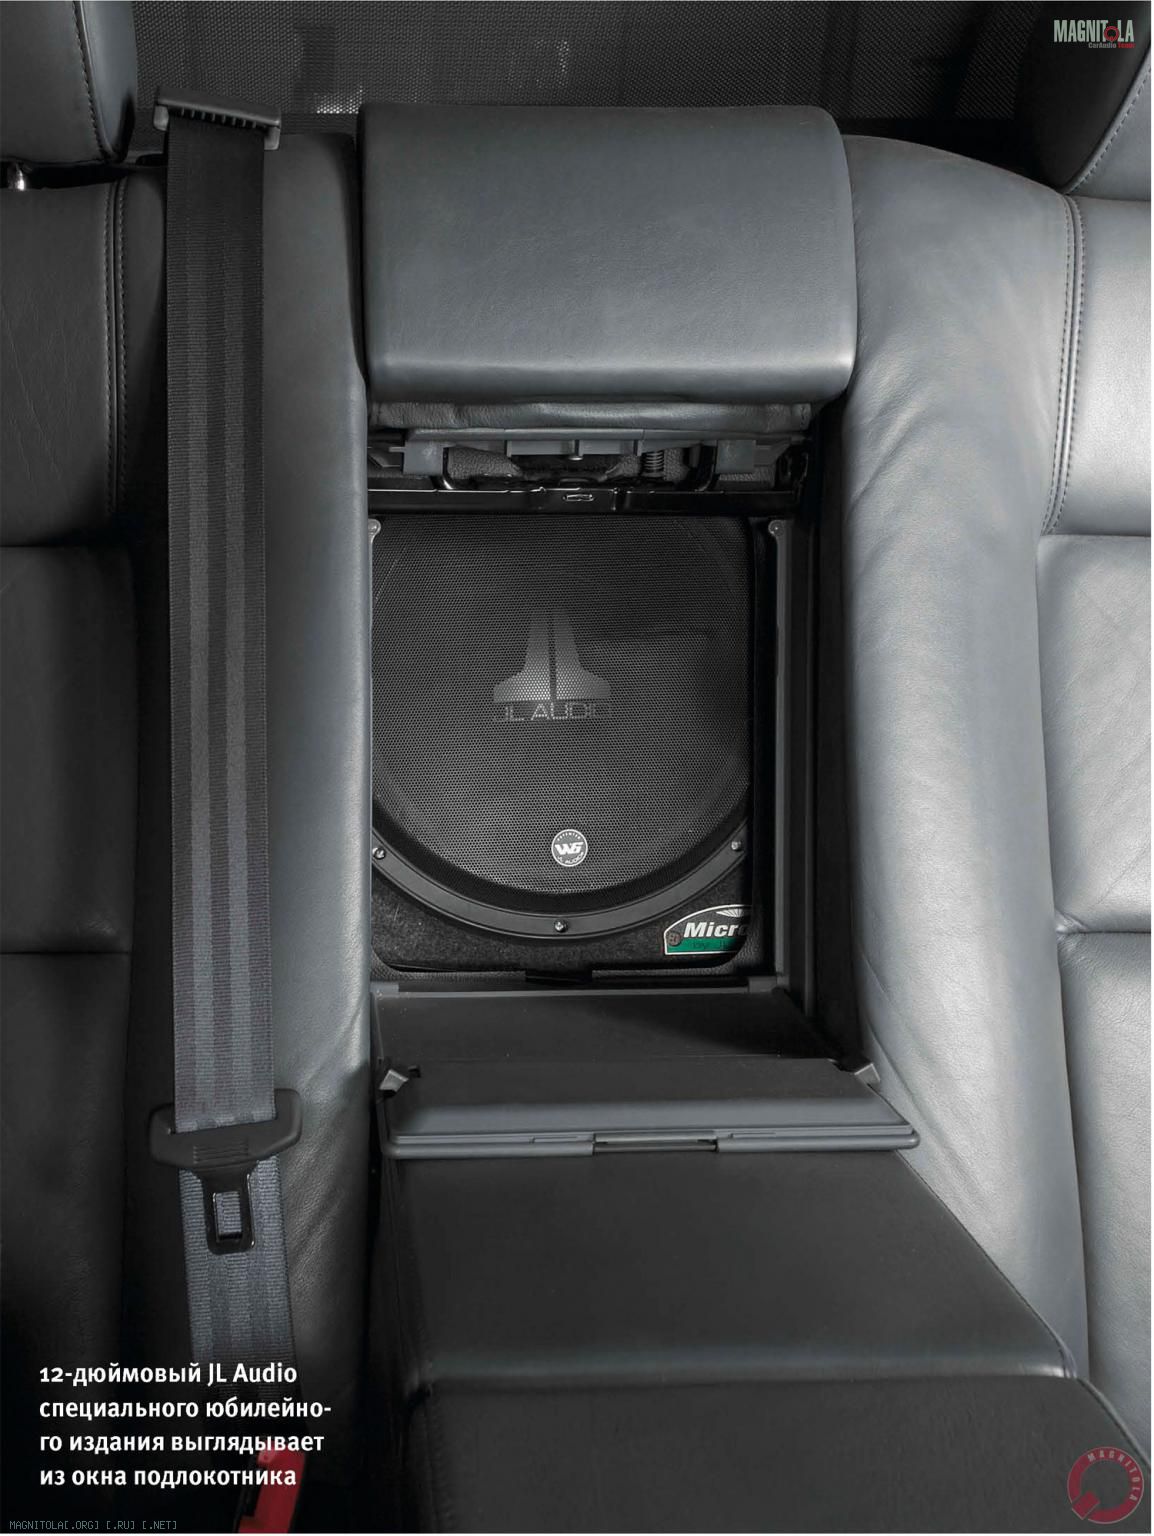 12-дюймовый JL Audio специального юбилейного издания выглядывает из окна подлокотника